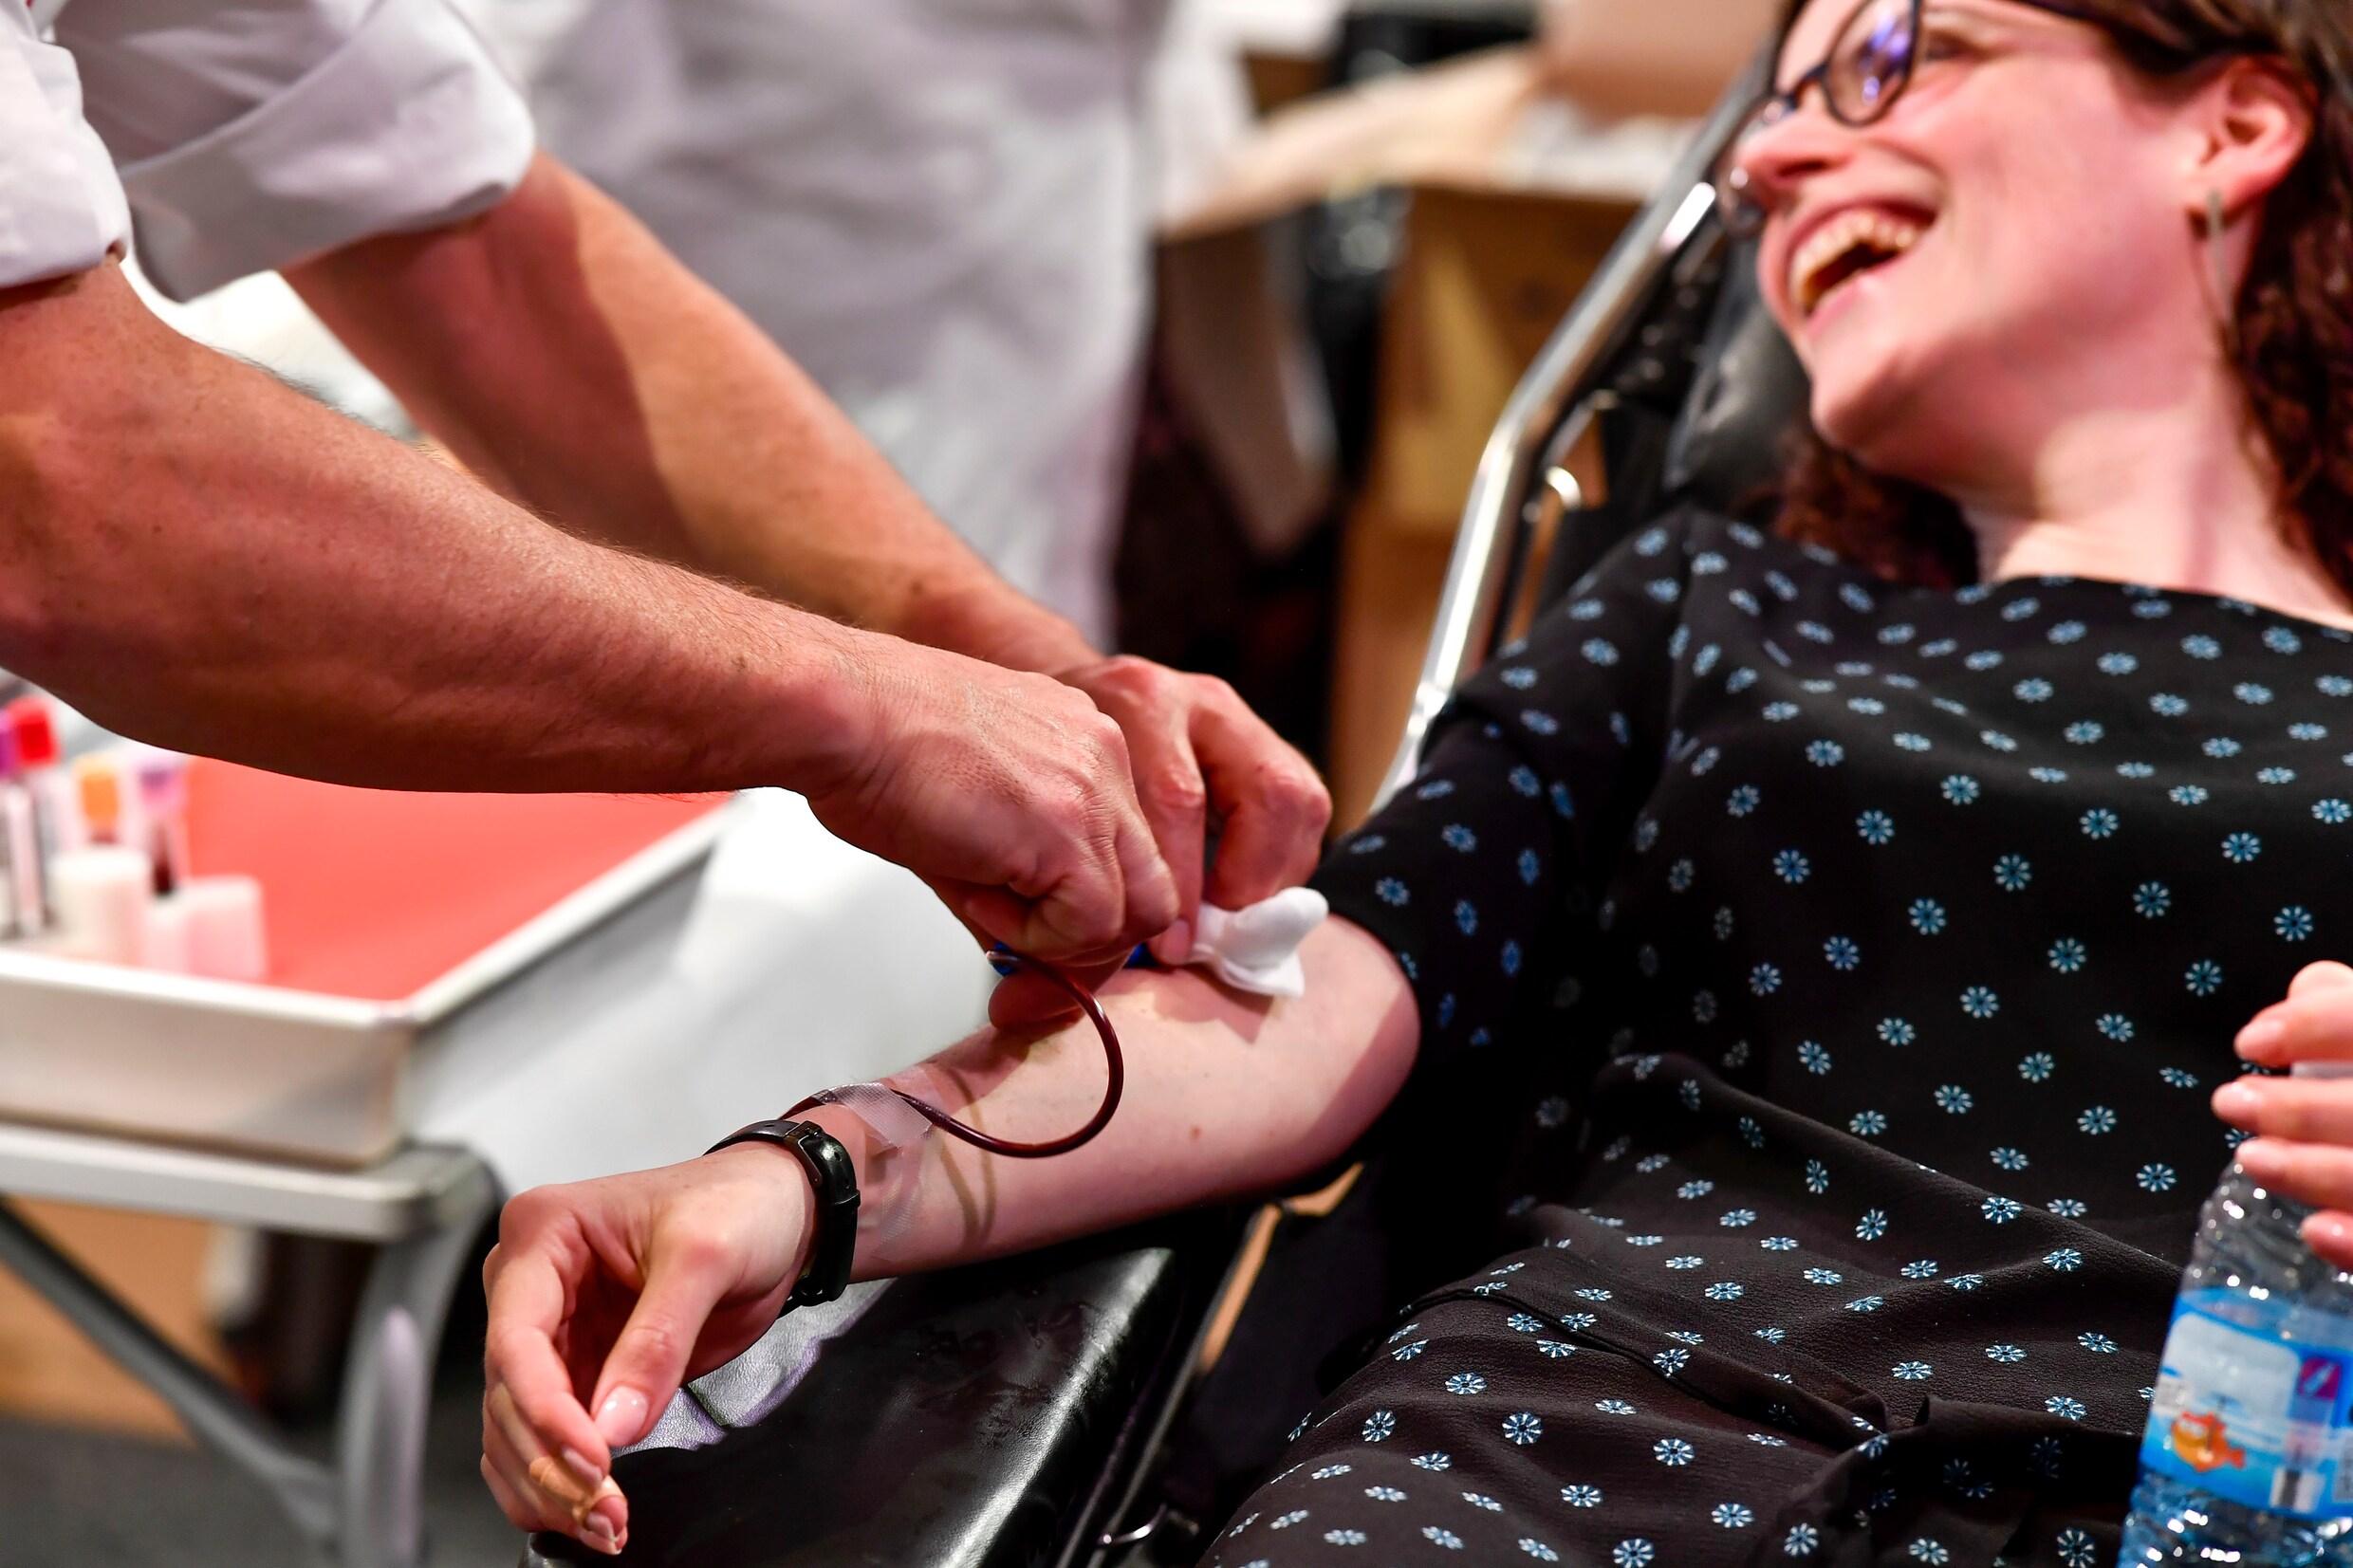 Rode Kruis zoekt dringend bloeddonoren: ‘In het slechtste geval moeten operaties uitgesteld worden’